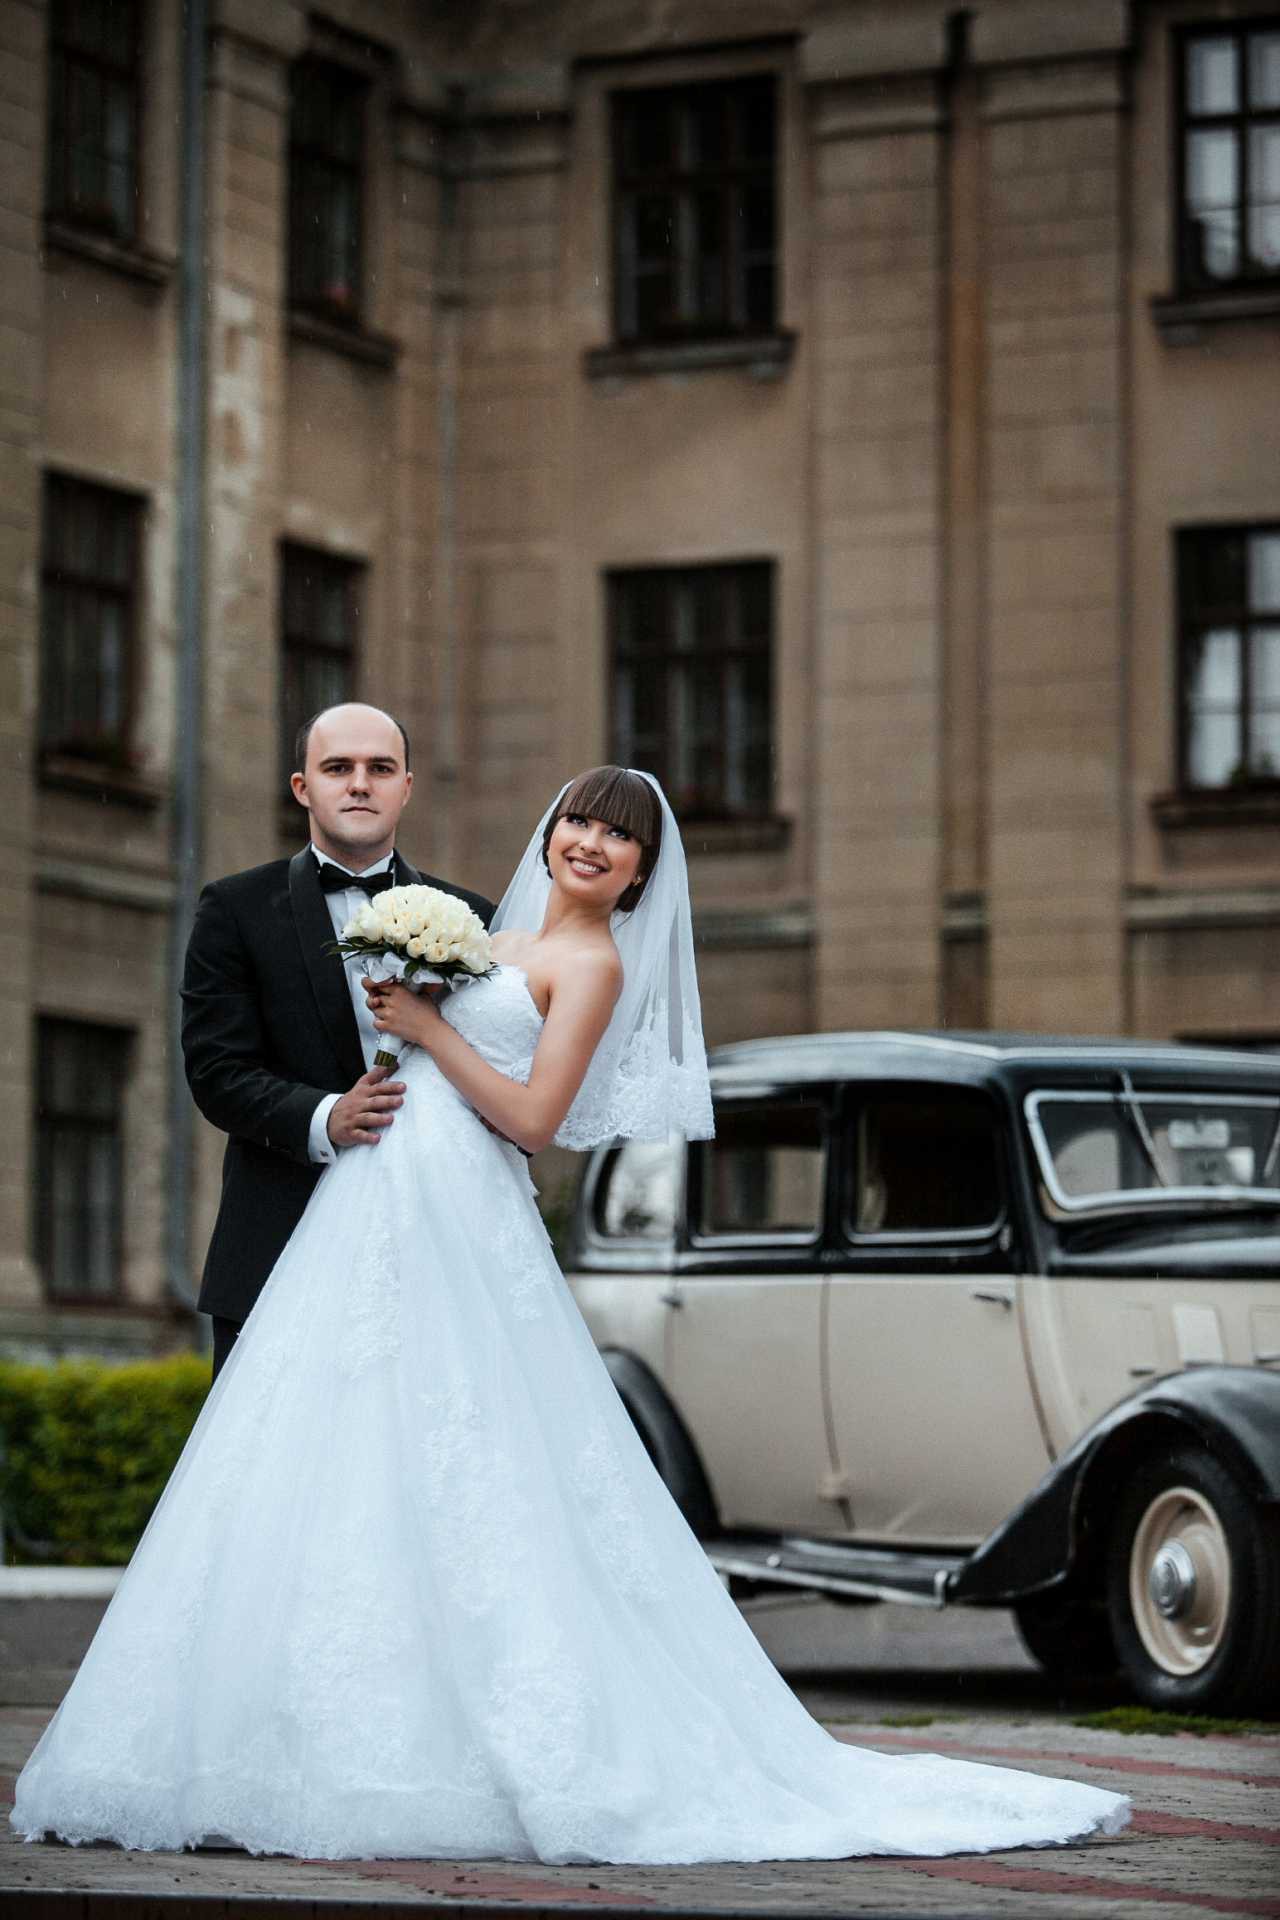 Співаючий депутат Віталій Ткачук з дружиною Ніною лідирують у фотоконкурсі 'Пара сезону' від журналу 'Давай одружимося'